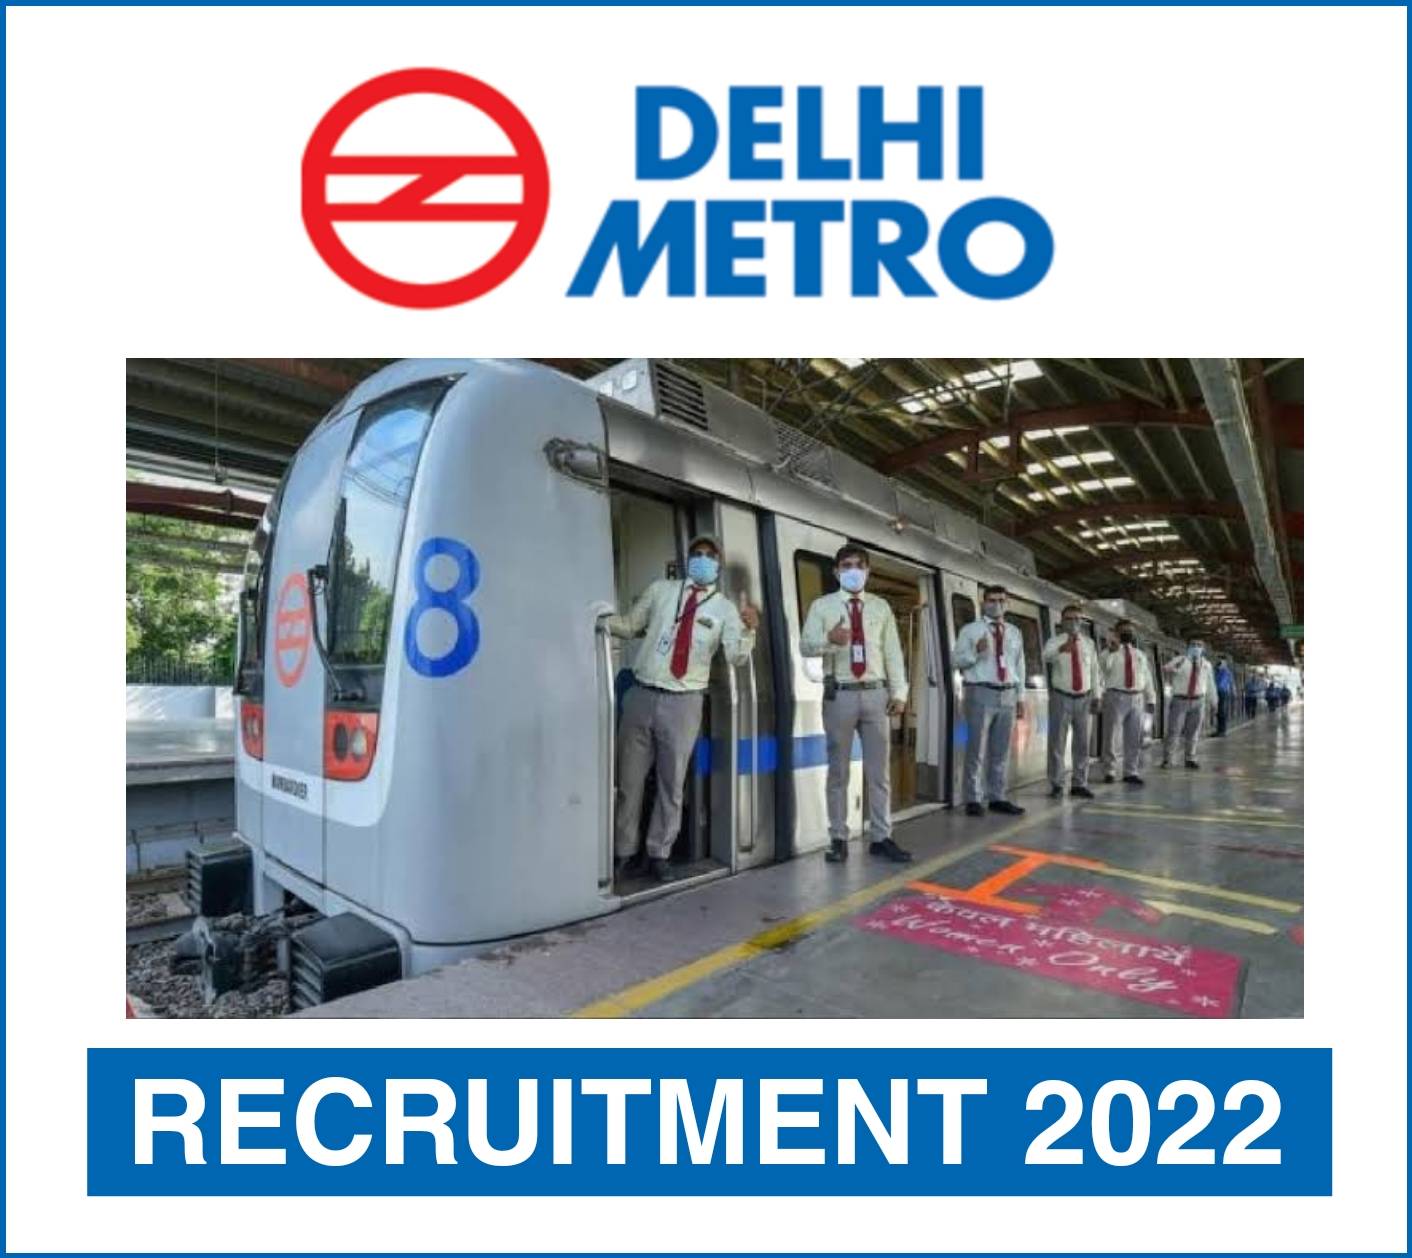 DMRC Recruitment 2022: दिल्ली मेट्रो रेल निगम, दिल्ली (DMRC) में नौकरी (Sarkari Naukri) पाने का एक शानदार अवसर निकला है। DMRC ने एडिशनल जनरल प्रबंधक के पदों (DMRC Recruitment 2022) को भरने के लिए आवेदन मांगे हैं। इच्छुक एवं योग्य उम्मीदवार जो इन रिक्त पदों (DMRC Recruitment 2022) के लिए आवेदन करना चाहते हैं, वे DMRCकी आधिकारिक वेबसाइट backend.delhimetrorail.com पर जाकर अप्लाई कर सकते हैं। इन पदों (DMRC Recruitment 2022) के लिए अप्लाई करने की अंतिम तिथि 2 दिसंबर 2022 है।    इसके अलावा उम्मीदवार सीधे इस आधिकारिक लिंक backend.delhimetrorail.com पर क्लिक करके भी इन पदों (DMRC Recruitment 2022) के लिए अप्लाई कर सकते हैं।   अगर आपको इस भर्ती से जुड़ी और डिटेल जानकारी चाहिए, तो आप इस लिंक DMRC Recruitment 2022 Notification PDF के जरिए आधिकारिक नोटिफिकेशन (DMRC Recruitment 2022) को देख और डाउनलोड कर सकते हैं। इस भर्ती (DMRC Recruitment 2022) प्रक्रिया के तहत कुल 1 पद को भरा जाएगा।   DMRC Recruitment 2022 के लिए महत्वपूर्ण तिथियां ऑनलाइन आवेदन शुरू होने की तारीख – ऑनलाइन आवेदन करने की आखरी तारीख- 2 दिसंबर 2022 DMRC Recruitment 2022 के लिए पदों का  विवरण पदों की कुल संख्या- एडिशनल जनरल प्रबंधक: 1 पद DMRC Recruitment 2022 के लिए योग्यता (Eligibility Criteria) एडिशनल जनरल प्रबंधक: मान्यता प्राप्त संस्थान से बी.टेक सिविल डिग्री  पास हो और अनुभव हो DMRC Recruitment 2022 के लिए उम्र सीमा (Age Limit) एडिशनल जनरल प्रबंधक -उम्मीदवारों की आयु 57 वर्ष मान्य होगी. DMRC Recruitment 2022 के लिए वेतन (Salary) एडिशनल जनरल प्रबंधक - 100000-260000/- DMRC Recruitment 2022 के लिए चयन प्रक्रिया (Selection Process) लिखित परीक्षा के आधार पर किया जाएगा।  DMRC Recruitment 2022 के लिए आवेदन कैसे करें इच्छुक और योग्य उम्मीदवार DMRCकी आधिकारिक वेबसाइट (backend.delhimetrorail.com) के माध्यम से  2 दिसंबर 2022 तक आवेदन कर सकते हैं। इस सबंध में विस्तृत जानकारी के लिए आप ऊपर दिए गए आधिकारिक अधिसूचना को देखें।  यदि आप सरकारी नौकरी पाना चाहते है, तो अंतिम तिथि निकलने से पहले इस भर्ती के लिए अप्लाई करें और अपना सरकारी नौकरी पाने का सपना पूरा करें। इस तरह की और लेटेस्ट सरकारी नौकरियों की जानकारी के लिए आप naukrinama.com पर जा सकते है।    DMRC Recruitment 2022: A great opportunity has come out to get a job (Sarkari Naukri) in Delhi Metro Rail Corporation, Delhi (DMRC). DMRC has invited applications to fill the posts of Additional General Manager (DMRC Recruitment 2022). Interested and eligible candidates who want to apply for these vacant posts (DMRC Recruitment 2022) can apply by visiting the official website of DMRC at backend.delhimetrorail.com. The last date to apply for these posts (DMRC Recruitment 2022) is 2 December 2022.  Apart from this, candidates can also directly apply for these posts (DMRC Recruitment 2022) by clicking on this official link backend.delhimetrorail.com. If you want more detail information related to this recruitment, then you can see and download the official notification (DMRC Recruitment 2022) through this link DMRC Recruitment 2022 Notification PDF. A total of 1 post will be filled under this recruitment (DMRC Recruitment 2022) process. Important Dates for DMRC Recruitment 2022 Online application start date – Last date to apply online - 2 December 2022 DMRC Recruitment 2022 Vacancy Details Total No. of Posts- Additional General Manager: 1 Post Eligibility Criteria for DMRC Recruitment 2022 Additional General Manager: B.Tech Civil Degree from recognized Institute and experience Age Limit for DMRC Recruitment 2022 Additional General Manager-Candidates age will be valid 57 years. Salary for DMRC Recruitment 2022 Additional General Manager - 100000-260000/- Selection Process for DMRC Recruitment 2022 It will be done on the basis of written test. How to Apply for DMRC Recruitment 2022 Interested and eligible candidates can apply through DMRC official website (backend.delhimetrorail.com) by 2 December 2022. For detailed information regarding this, you can refer to the official notification given above.  If you want to get a government job, then apply for this recruitment before the last date and fulfill your dream of getting a government job. You can visit naukrinama.com for more such latest government jobs information.